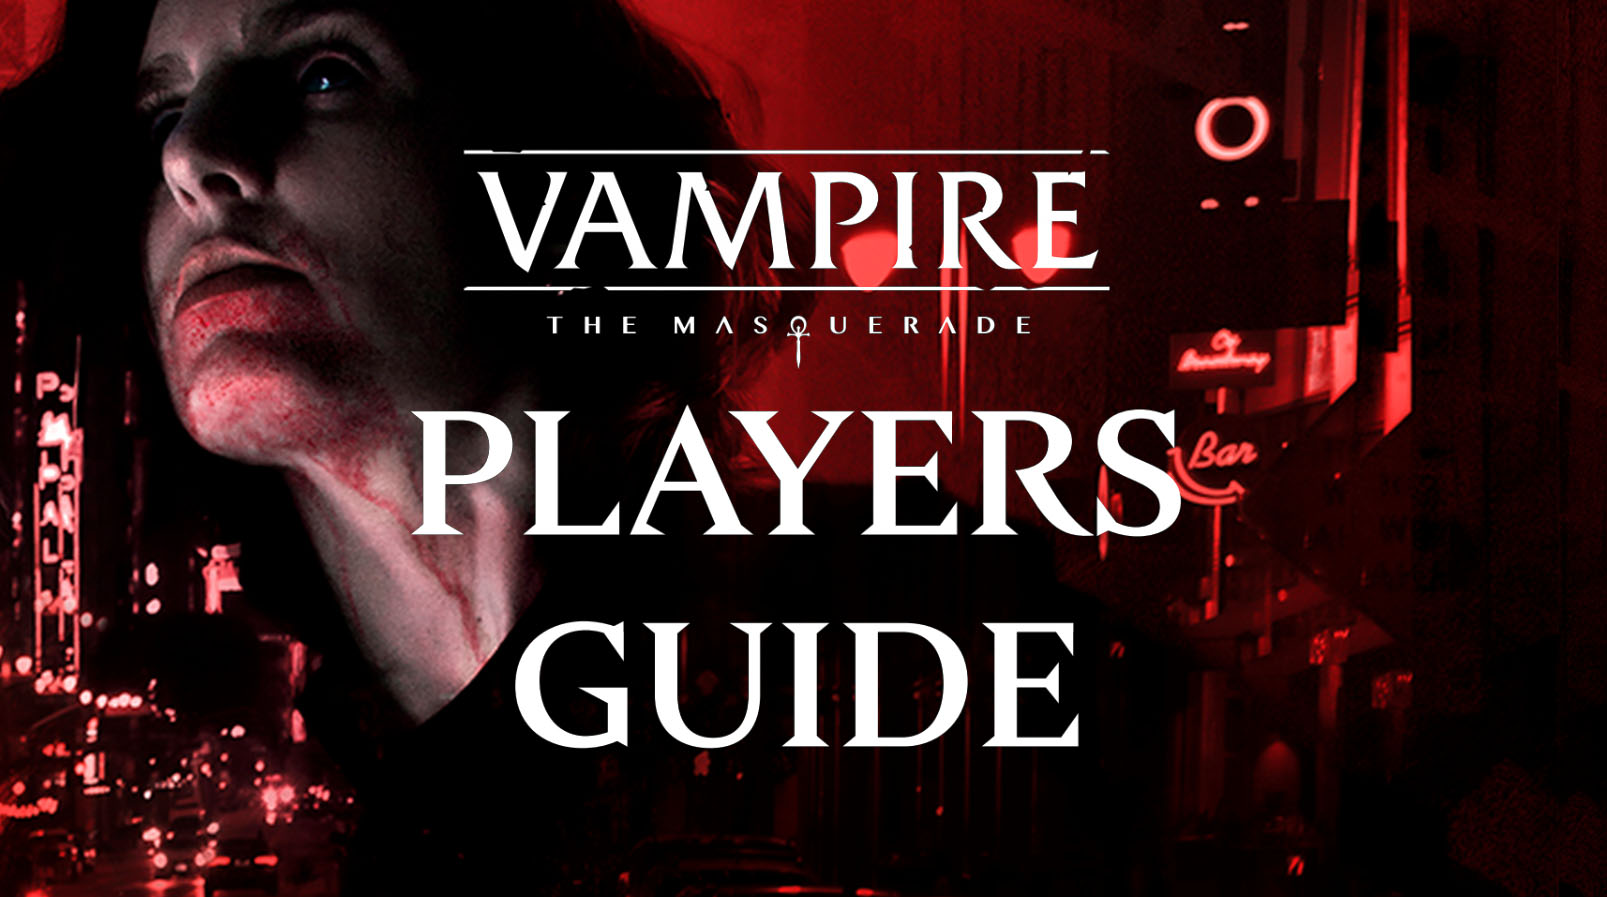 Vampire: The Masquerade - Swansong, White Wolf Wiki